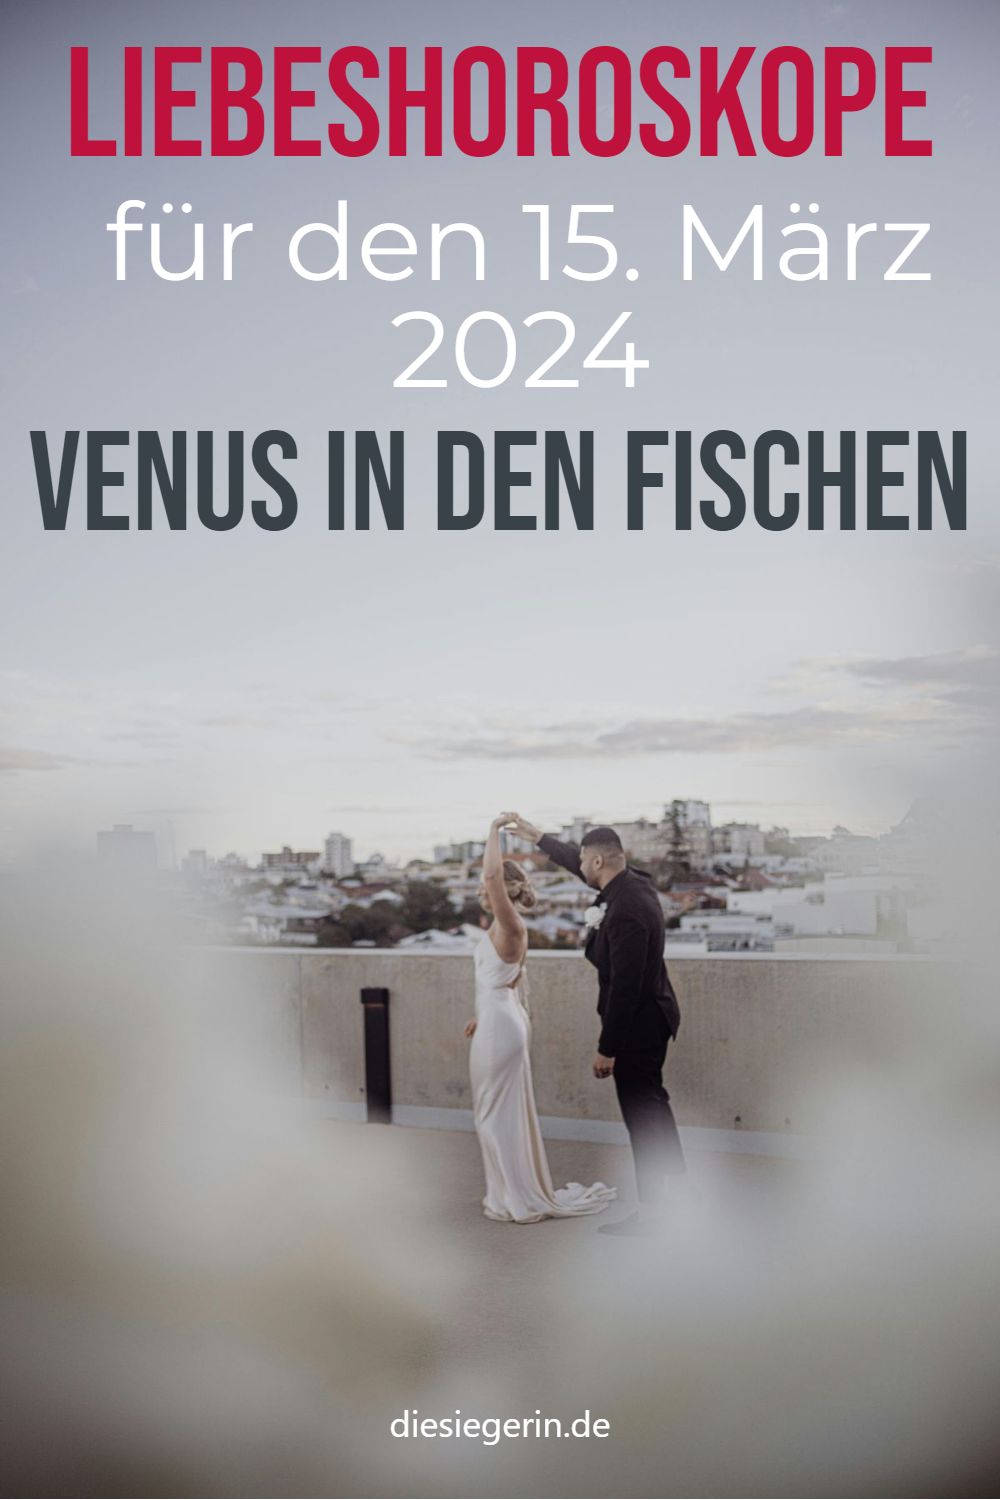 Liebeshoroskope für den 15. März 2024 Venus in den Fischen